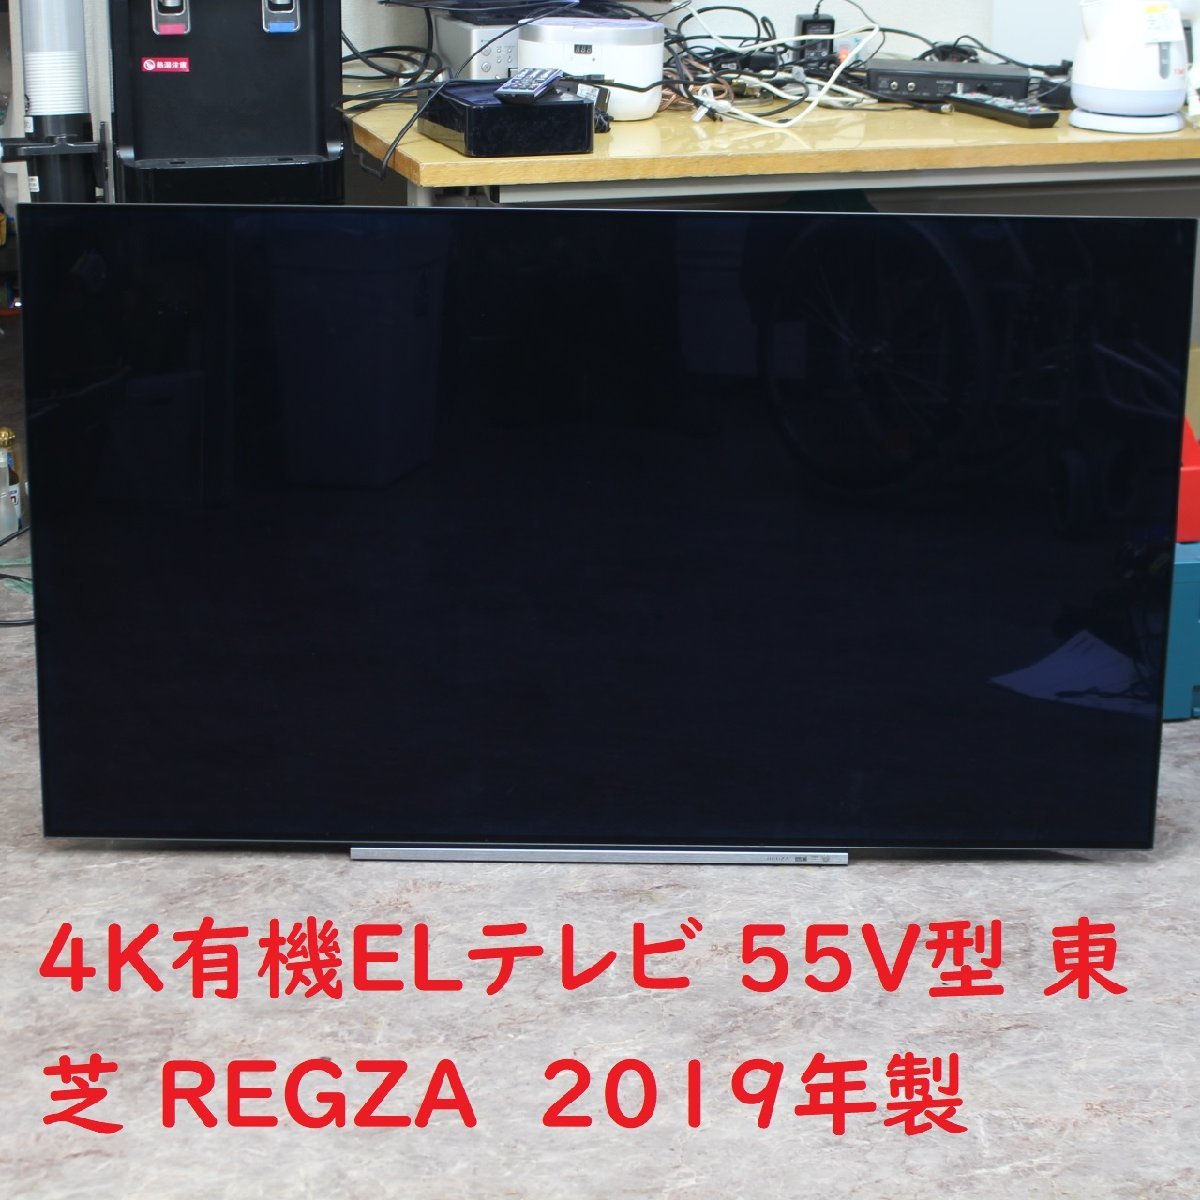 東京都大田区にて TOSHIBA 4K有機ELテレビ 55X930 2019年製 を出張買取させて頂きました。